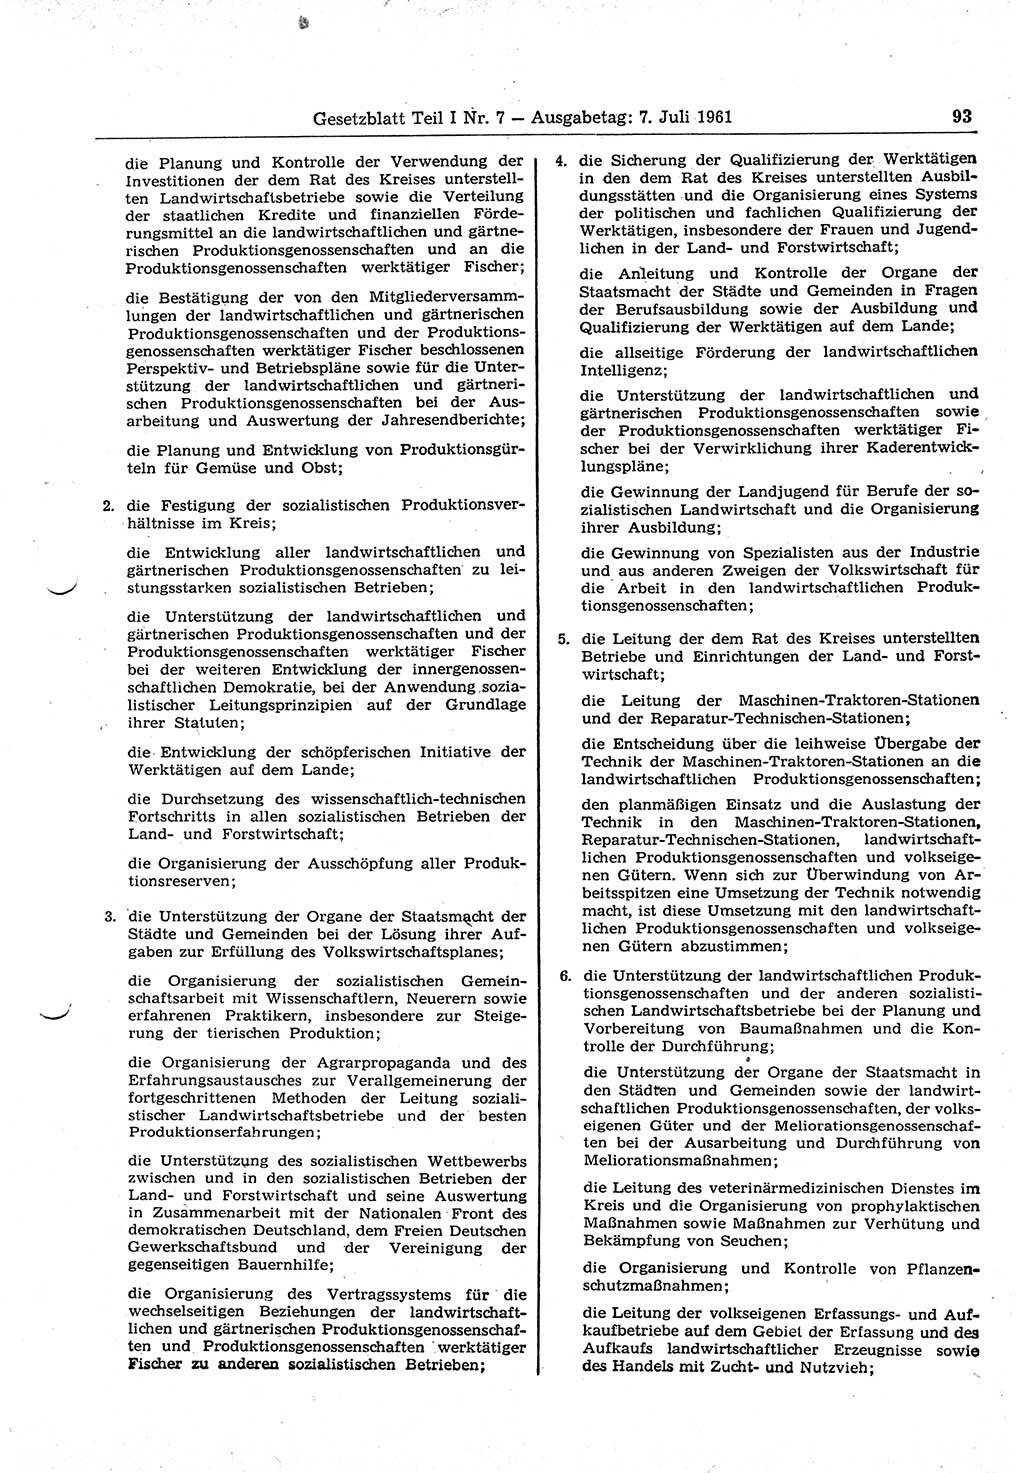 Gesetzblatt (GBl.) der Deutschen Demokratischen Republik (DDR) Teil Ⅰ 1961, Seite 93 (GBl. DDR Ⅰ 1961, S. 93)